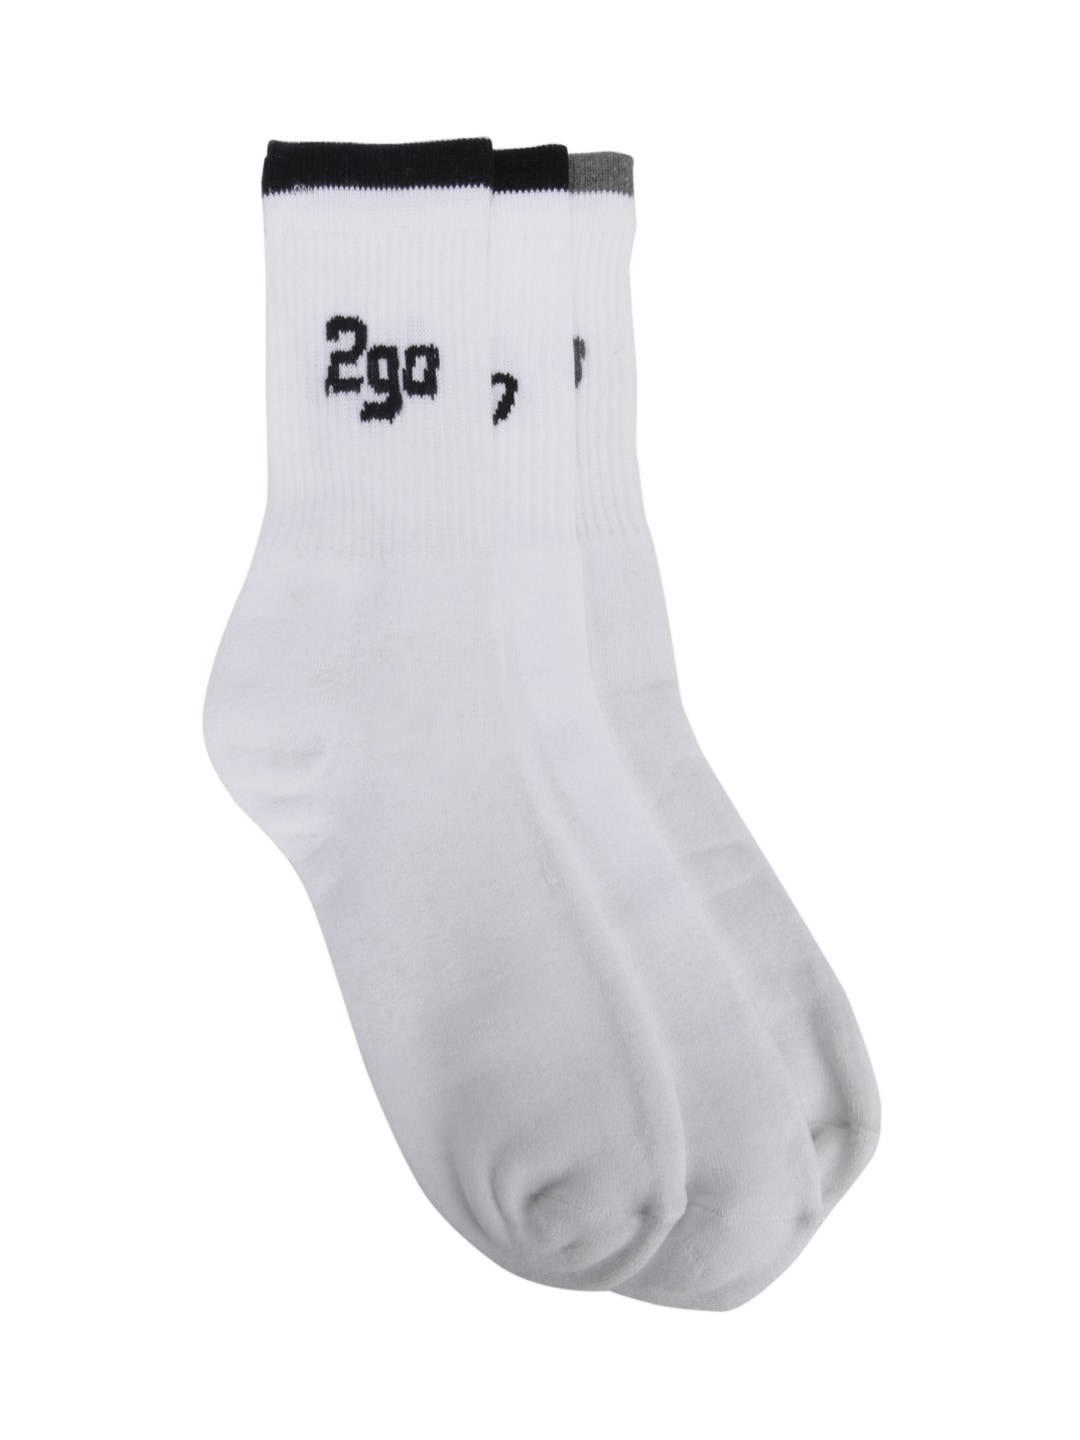 2go Active Gear USA Men Pack of 3 White Socks